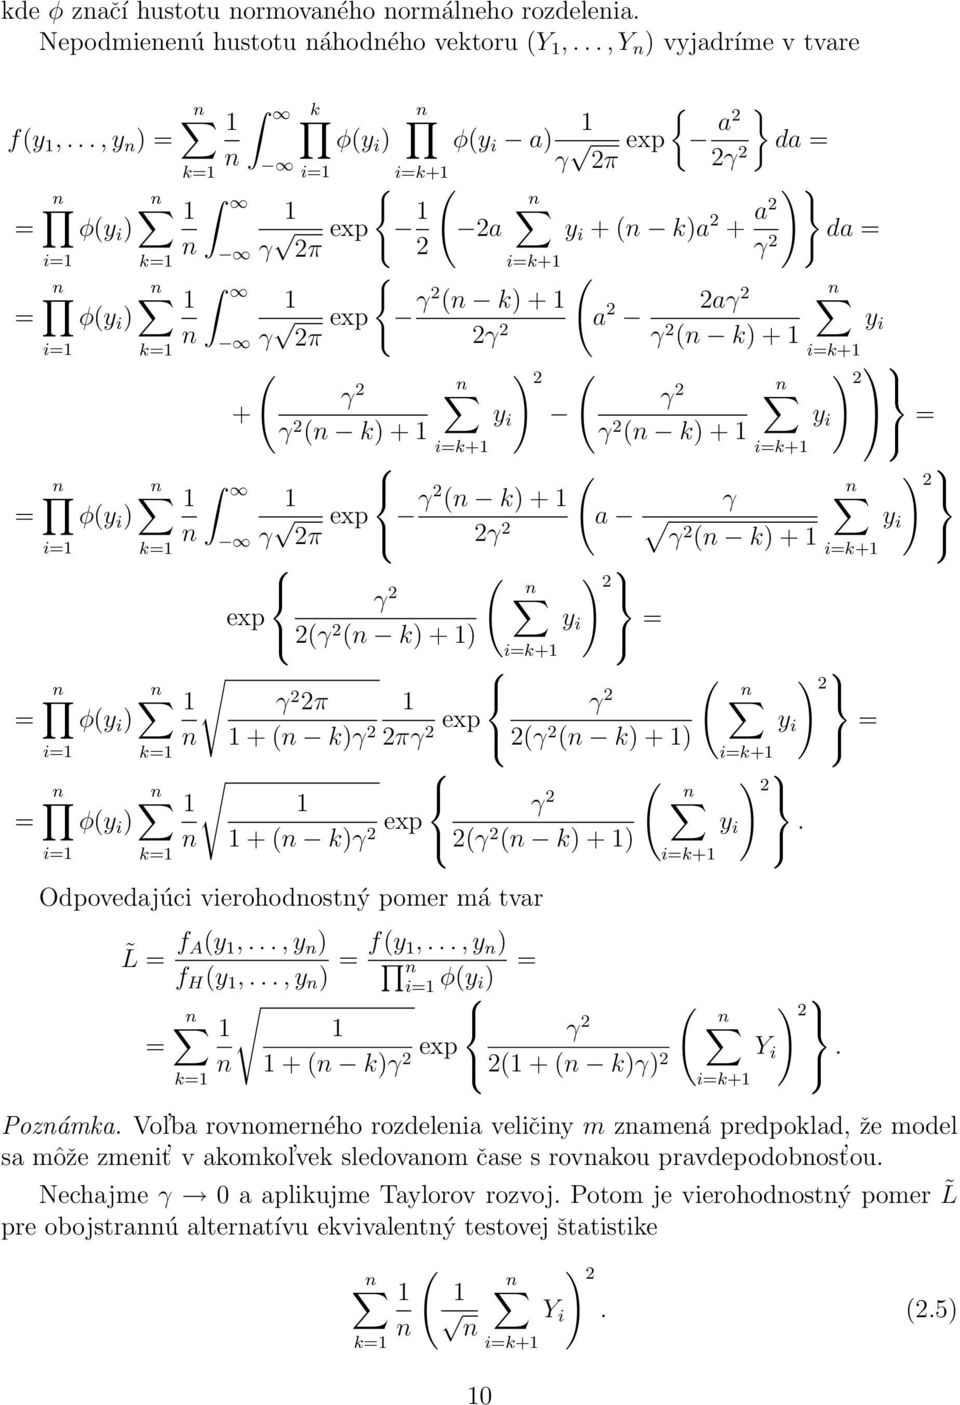 a2 da = 2 γ 2 i=k+ { ( n γ 2π exp γ2 (n k) + a 2 2aγ 2 y 2γ 2 γ 2 i (n k) + i=k+ ( ) 2 ( ) 2 γ 2 γ 2 + y γ 2 i y (n k) + γ 2 i (n k) + = i=k+ i=k+ ( ) 2 n γ 2π exp (n k) + γ γ2 a y 2γ 2 i γ2 (n k) +